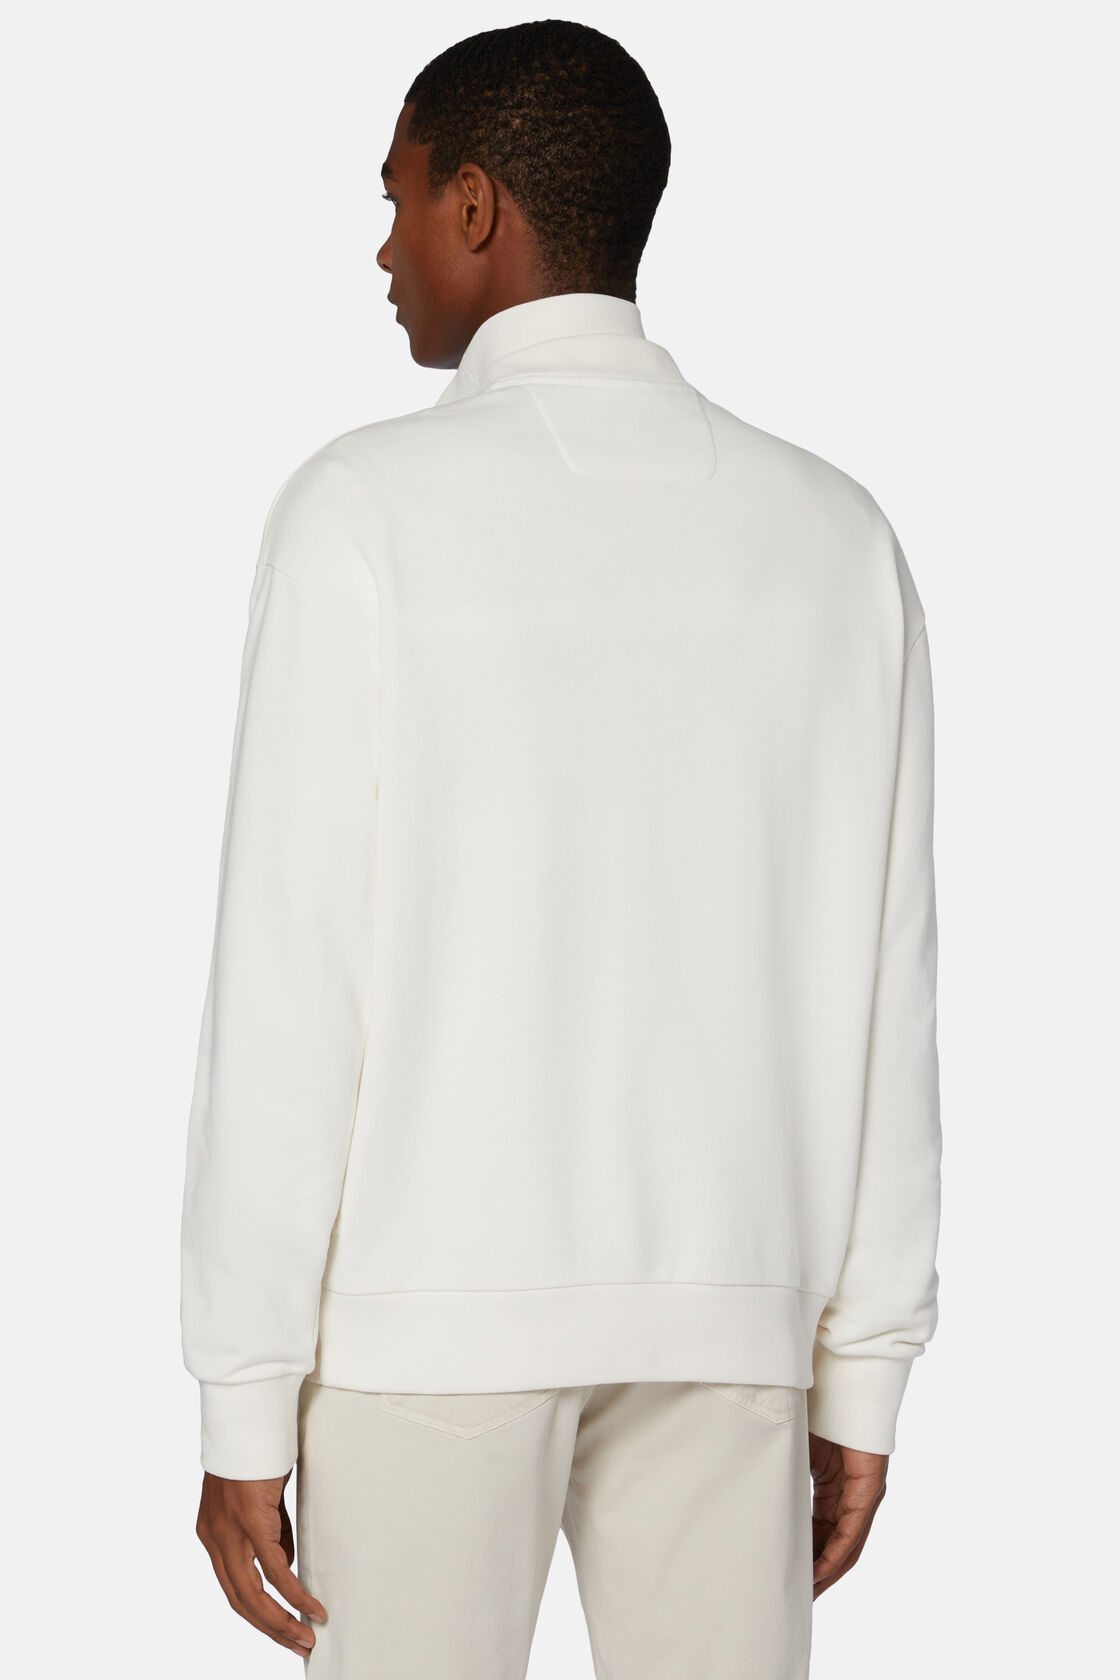 Sweatshirt Mit Halbem Reißverschluss Aus Bio-Baumwollmischung, Weiß, hi-res